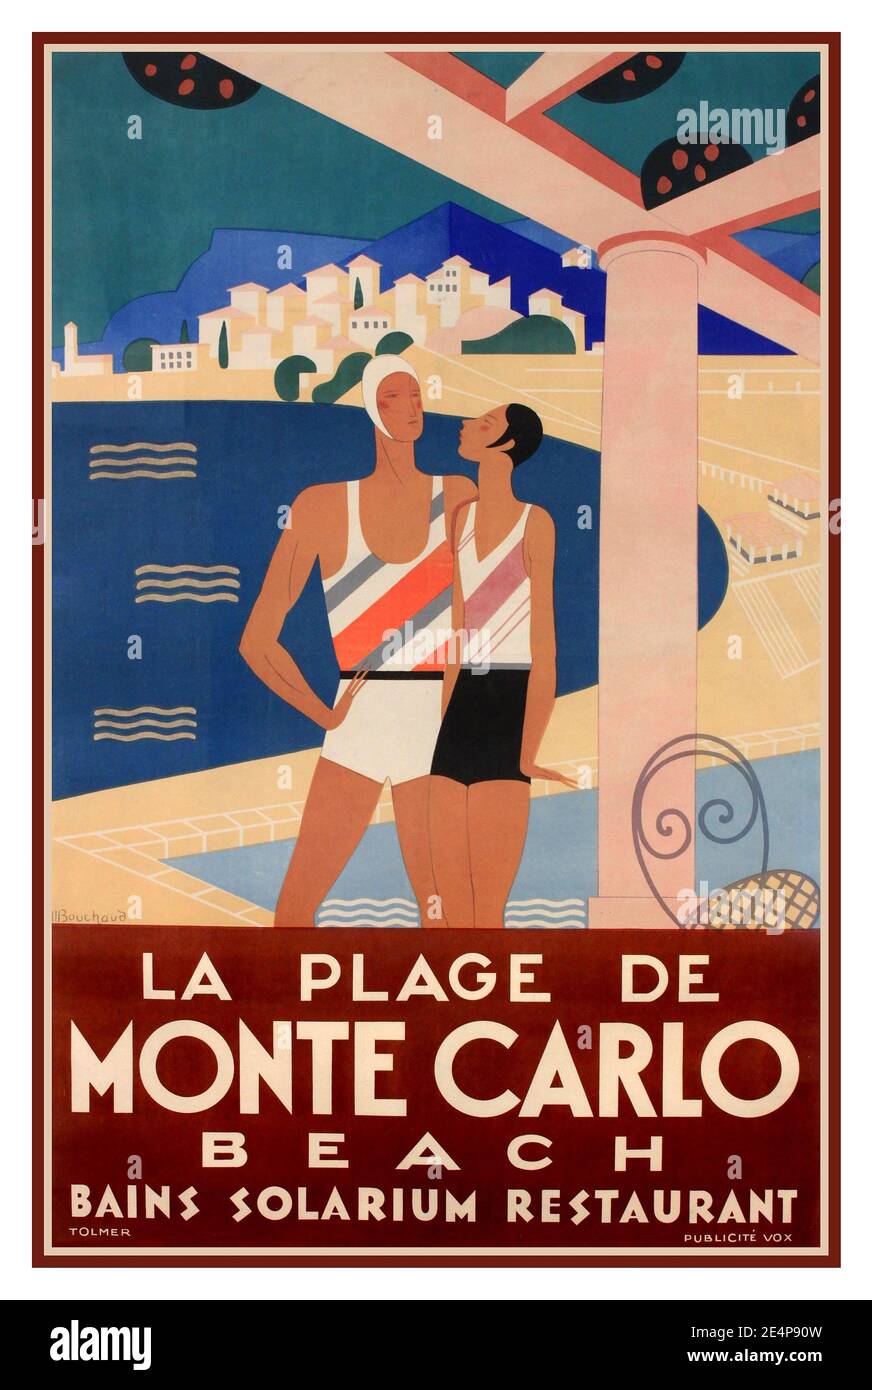 Monte Carlo 1930er Jahre Vintage Travel Poster Michel Bouchaud (1902-1965) 'La Plage de Monte Carlo', STRAND BAINS SOLARIUM RESTAURANT Poster gedruckt von Tolmer Publicite Vox 1930 Stockfoto